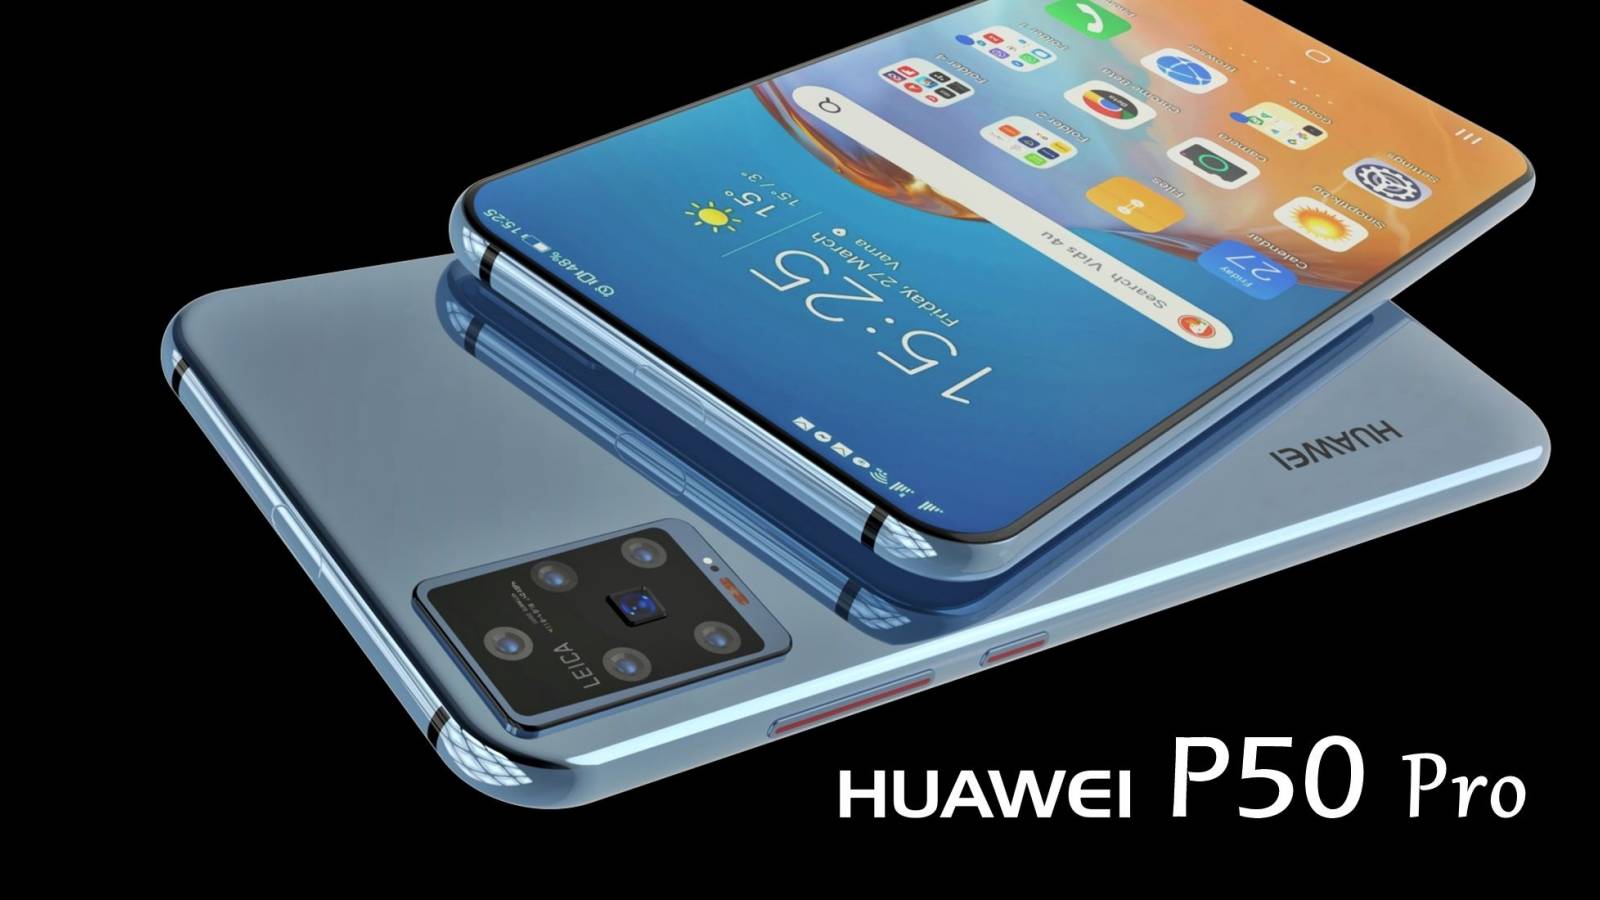 Huawei P50 Pro: Schimbare IMPORTANTA la care NU Sperau Fanii